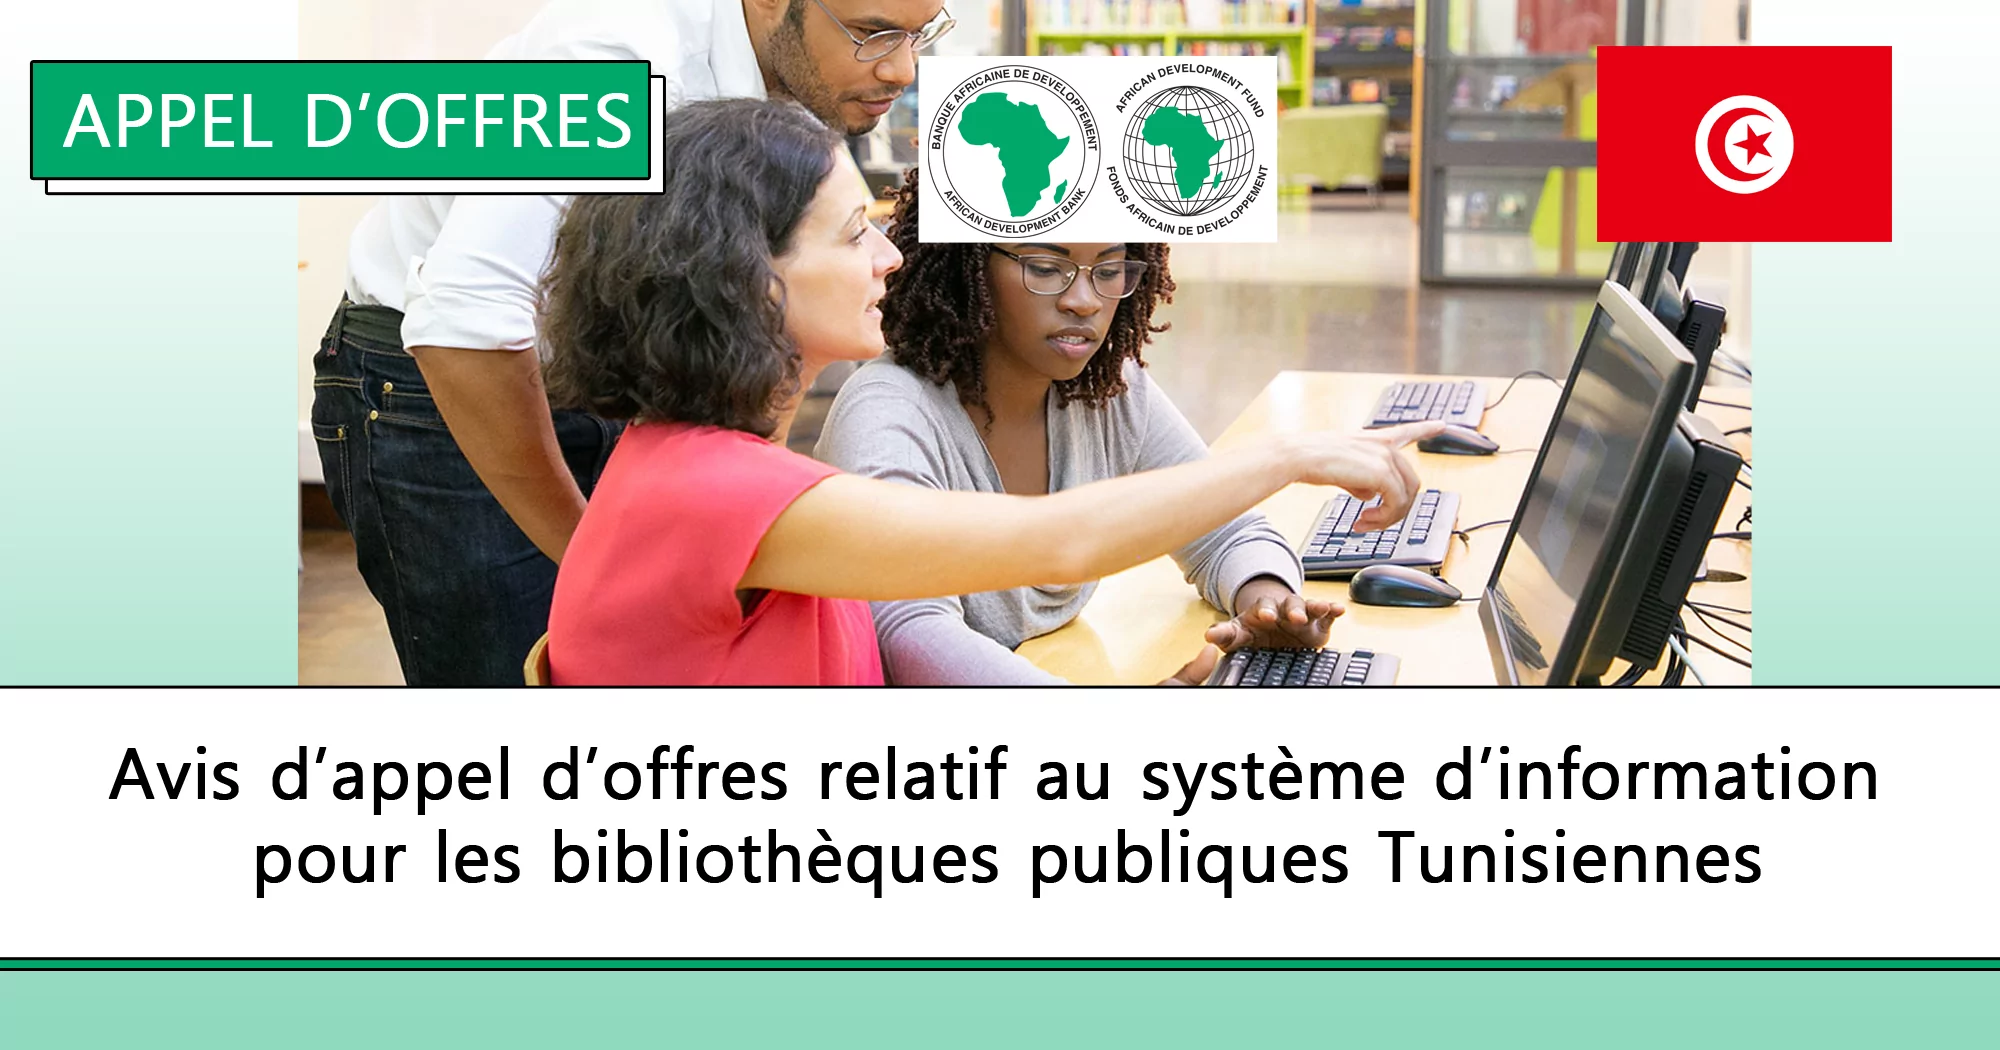 Avis d’appel d’offres relatif au système d’information pour les bibliothèques publiques Tunisiennes